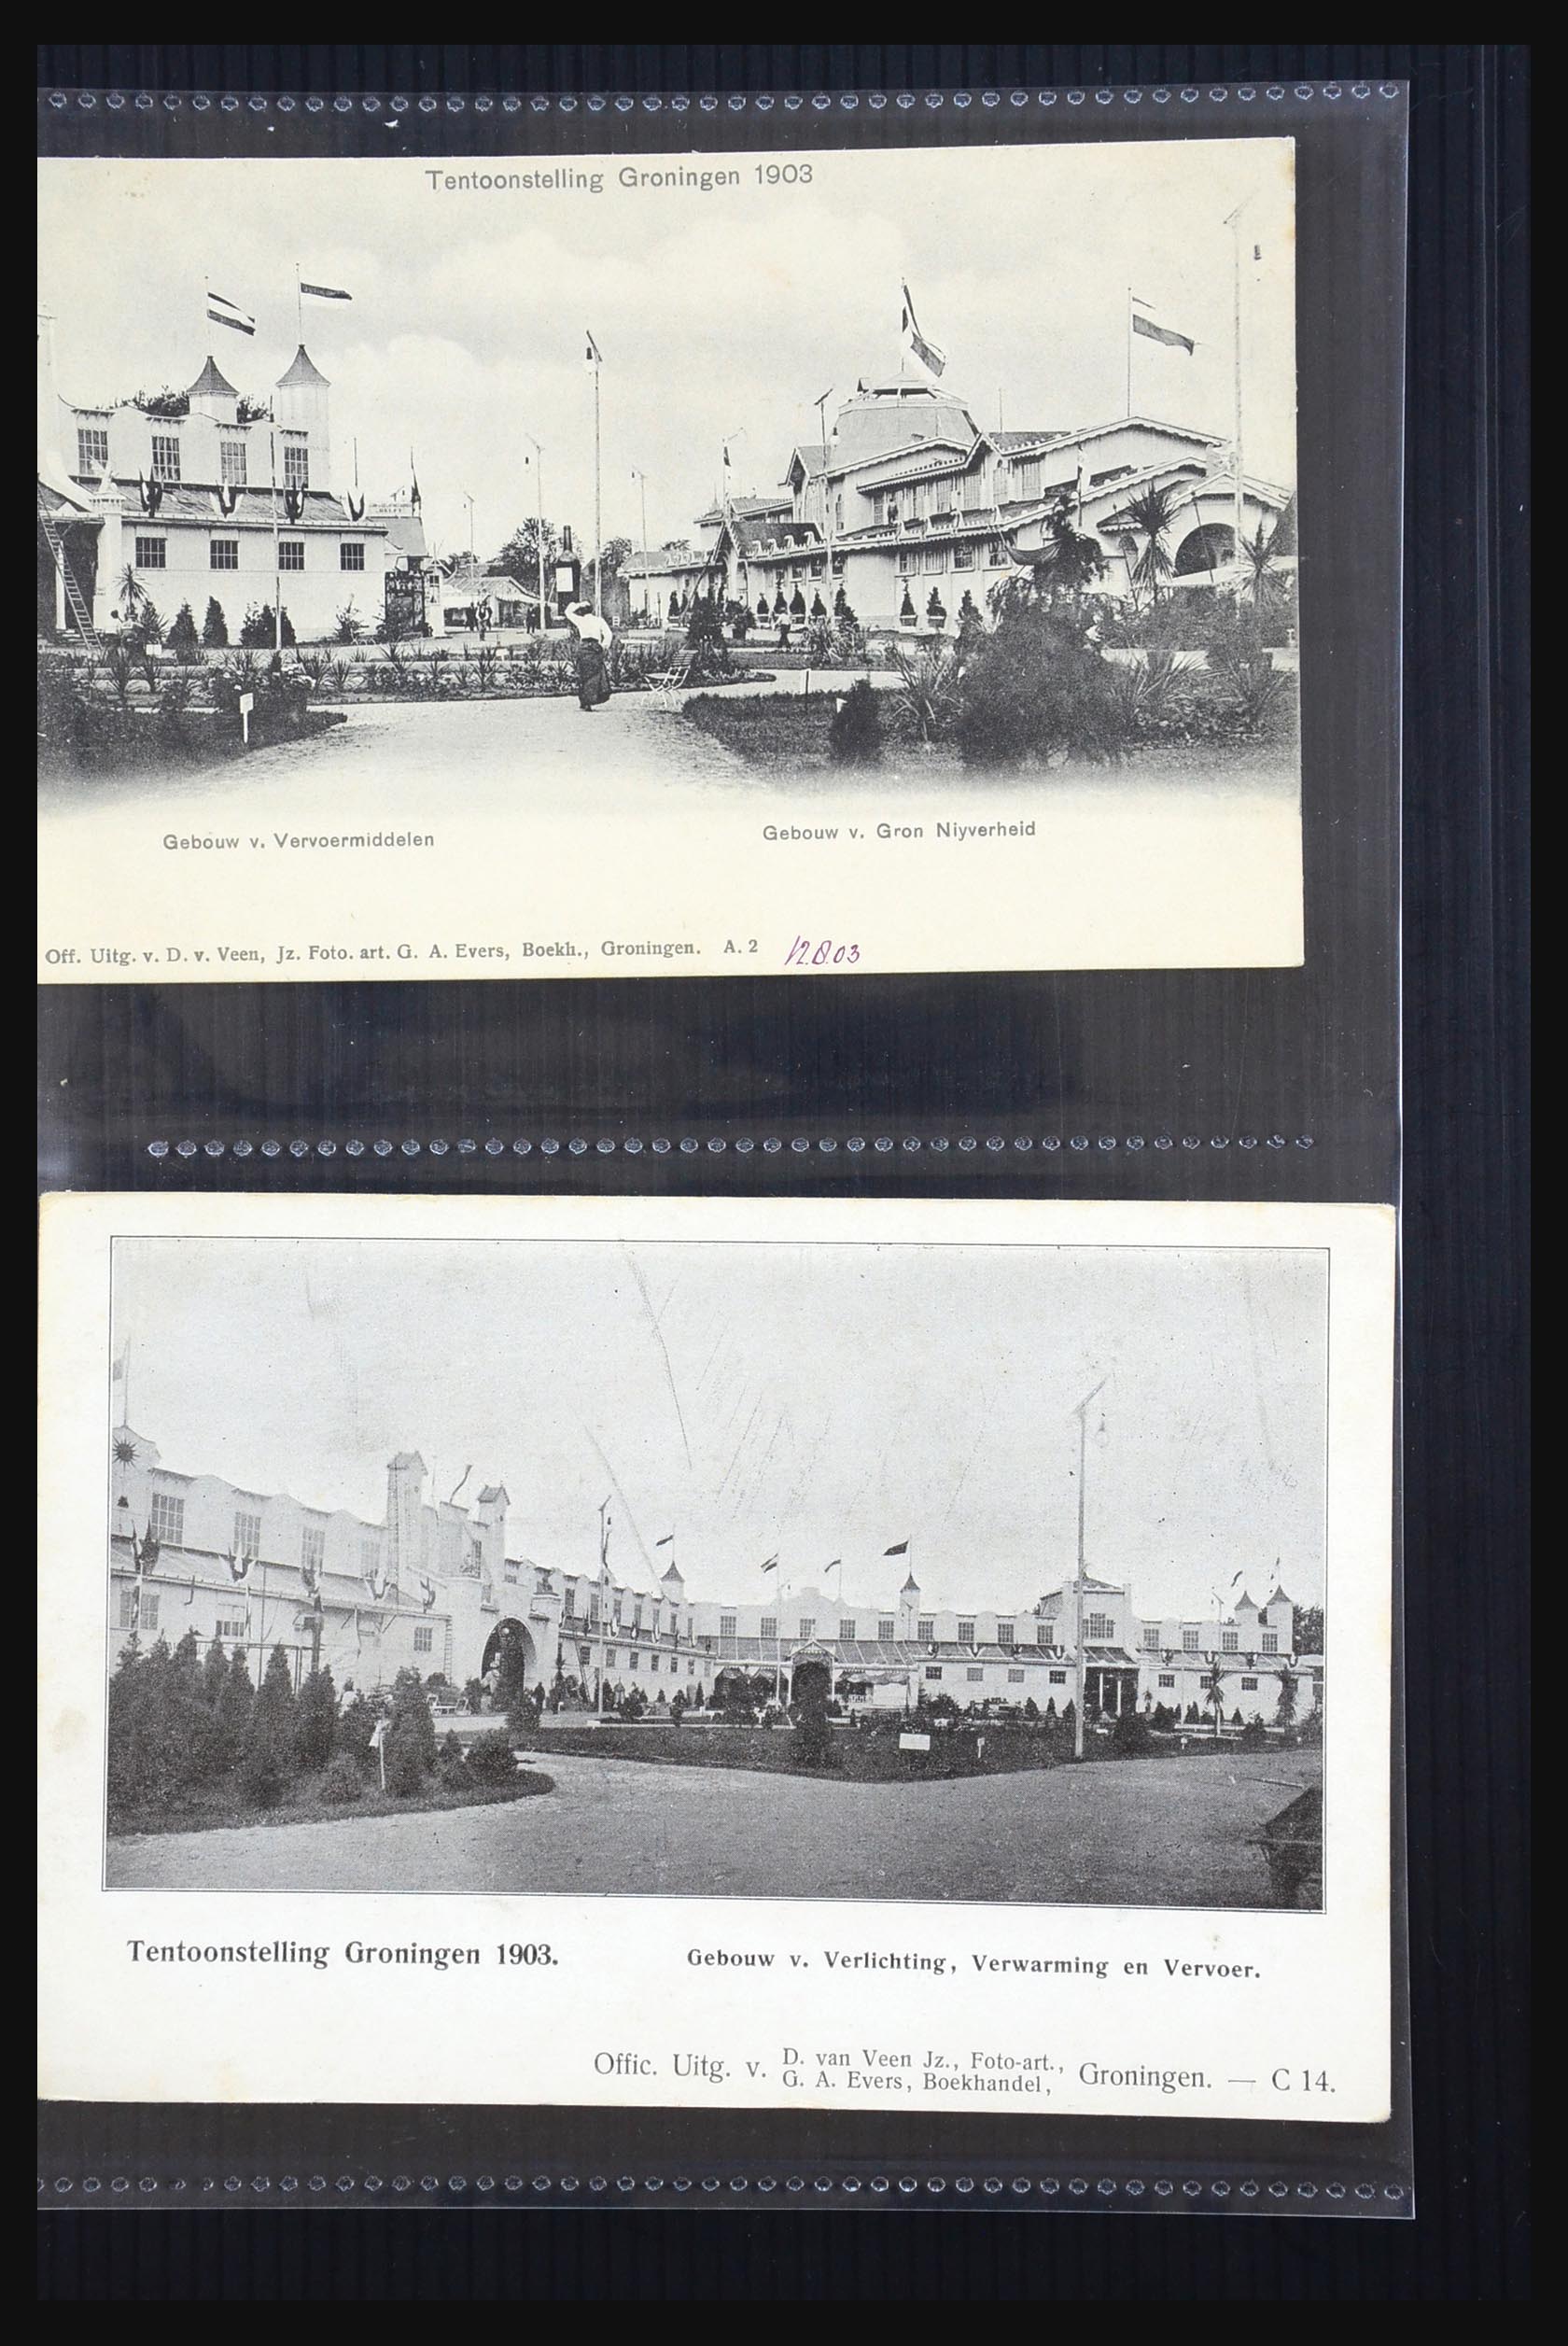 31338 017 - 31338 Nederland ansichtkaarten 1897-1914.